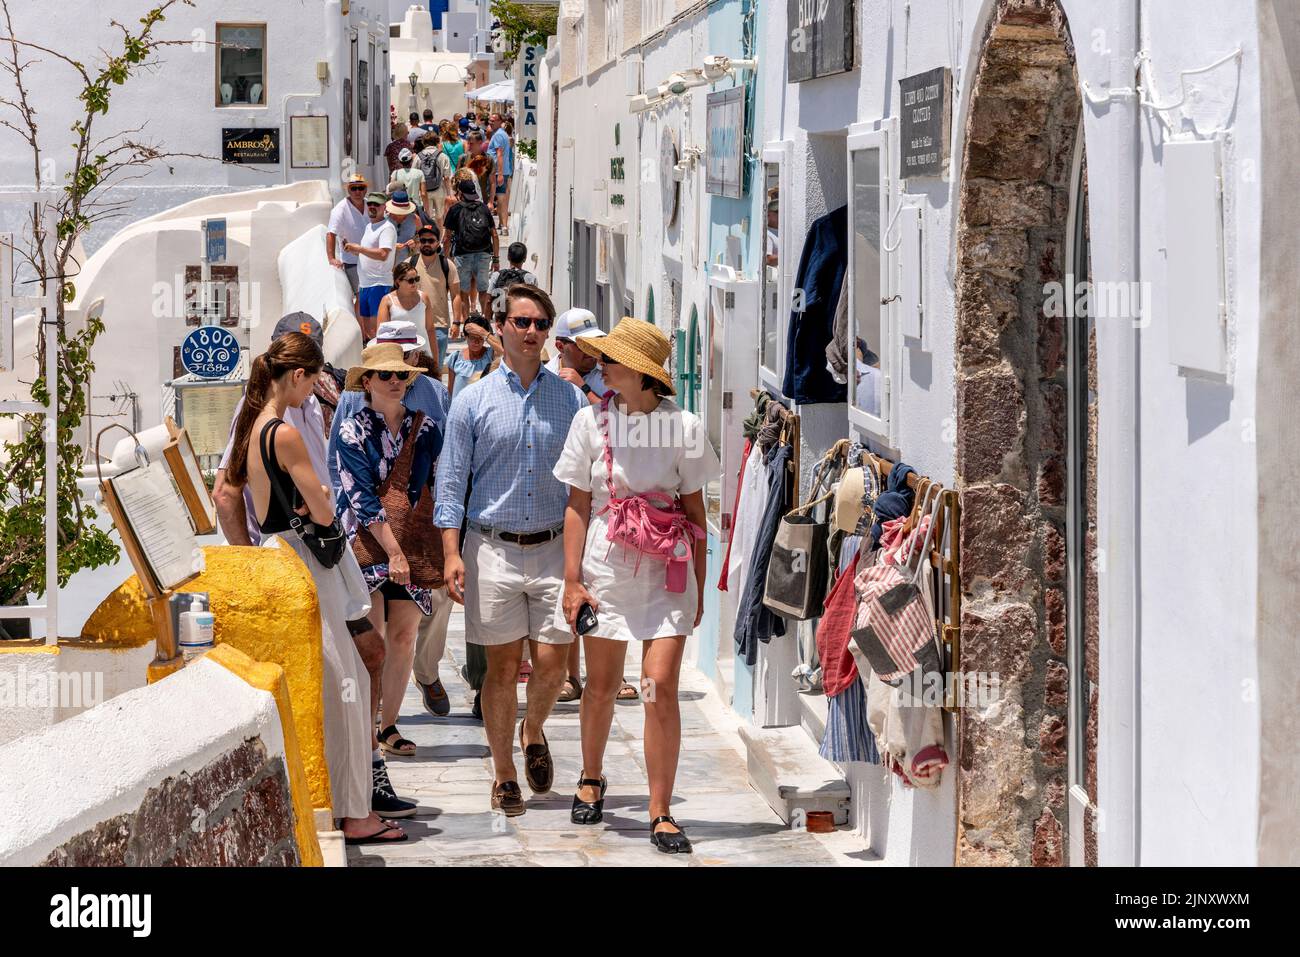 Touristes/visiteurs Shopping dans la ville d'Oia, Santorini, Iles grecques, Grèce. Banque D'Images